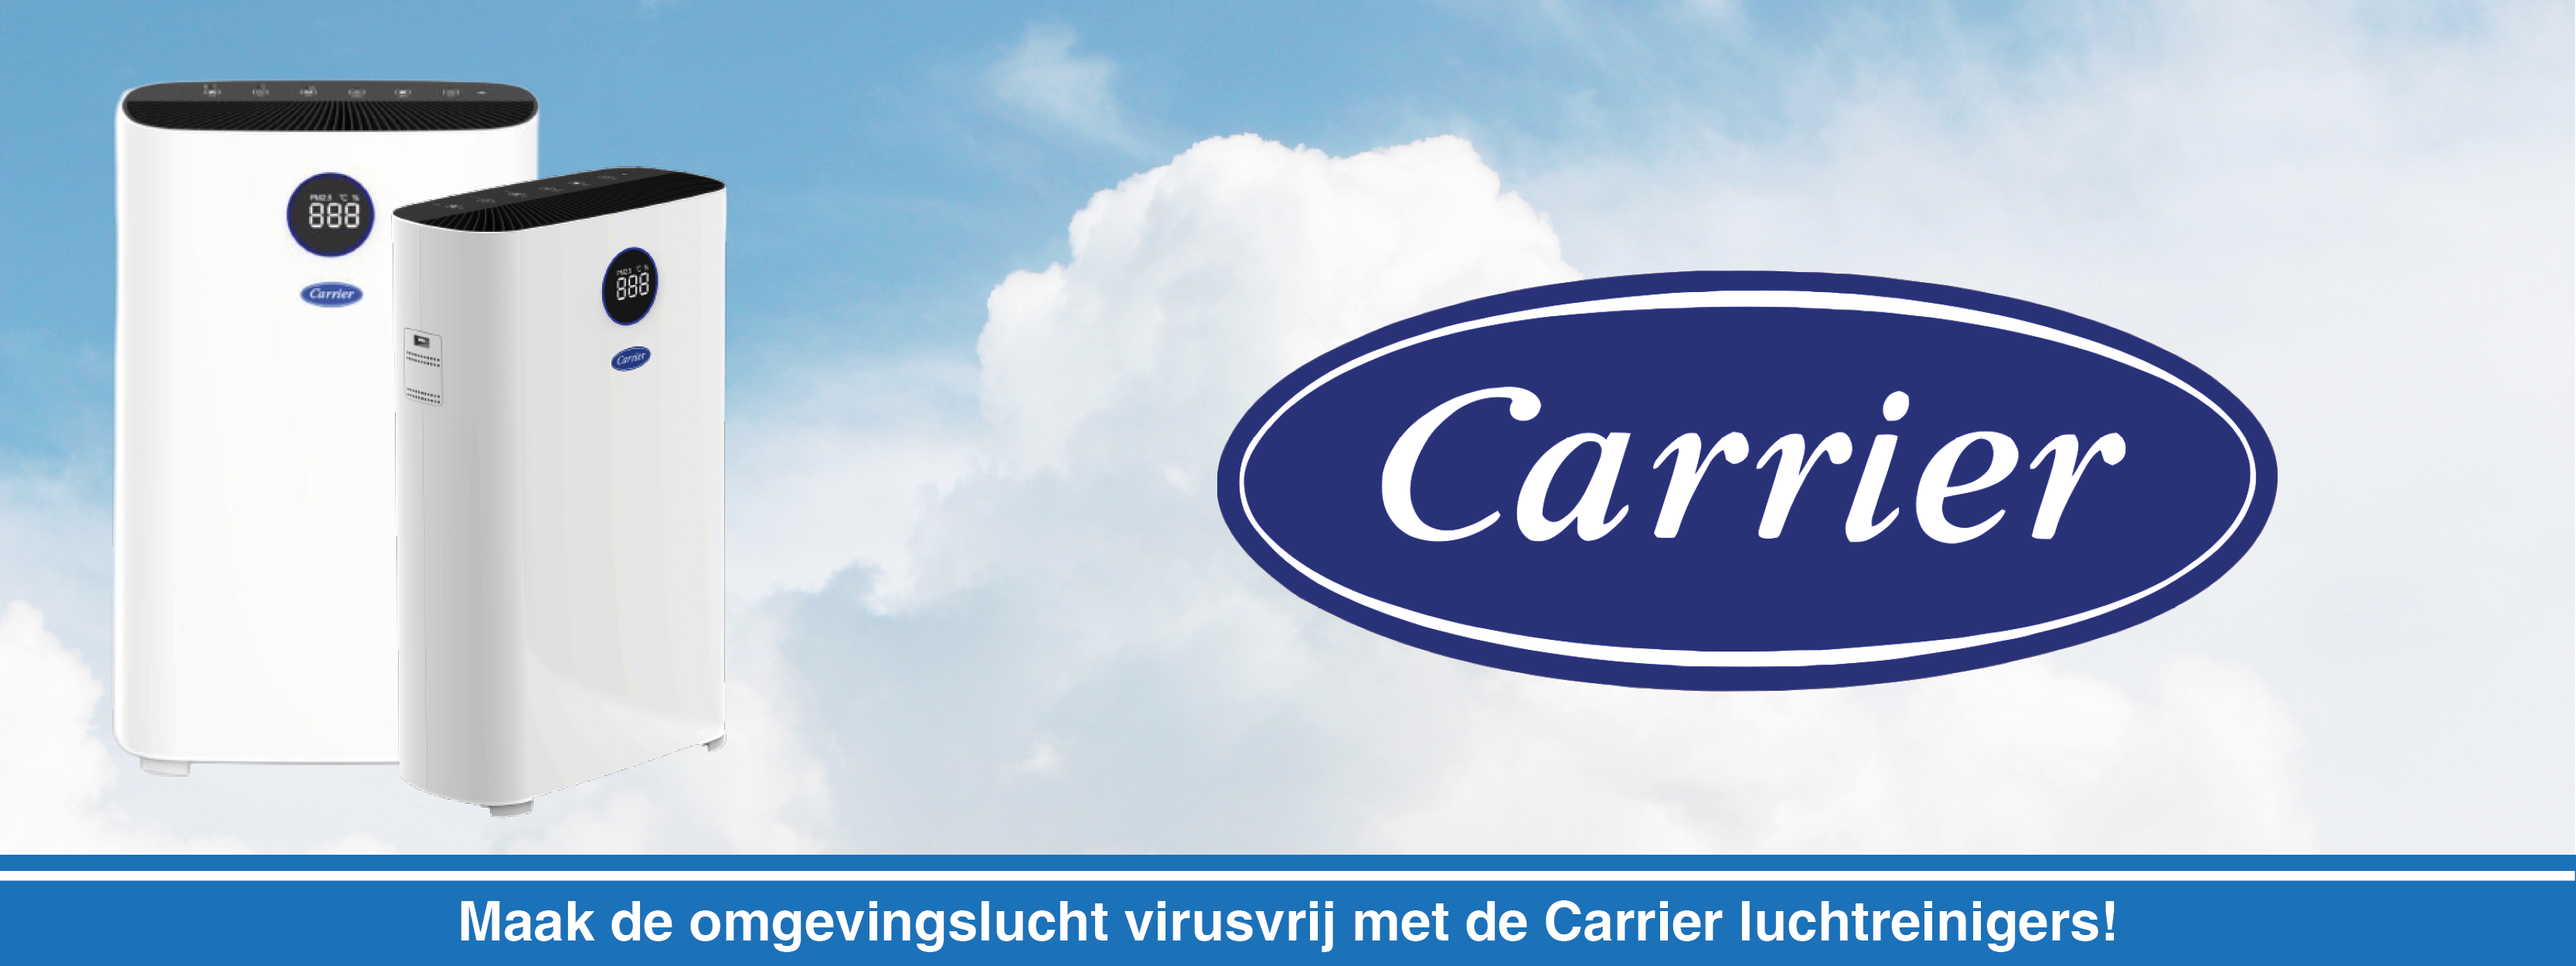 Carrier Luchtreinigers voor het doden van virussen!